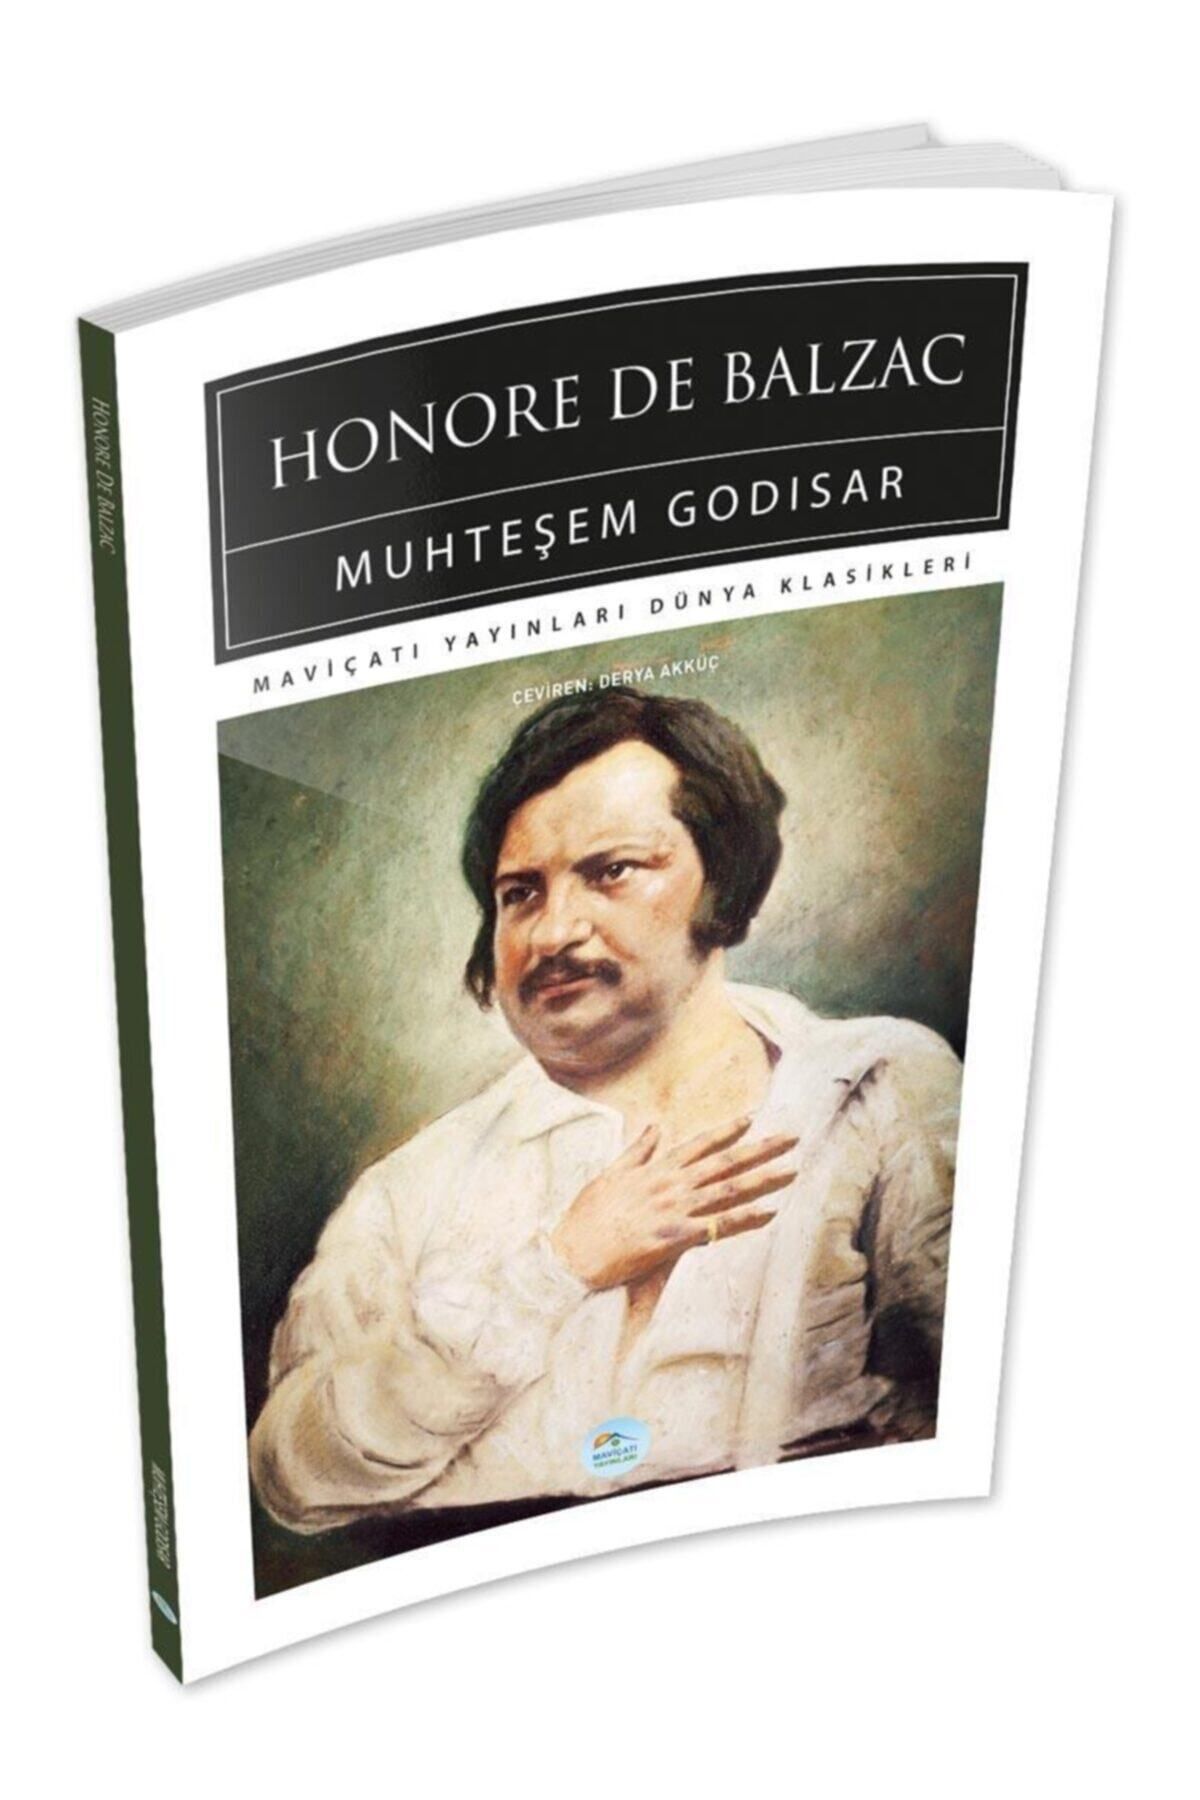 Mavi Çatı Yayınları Muhteşem Godisar - Honore De Balzac - Maviçatı (dünya Klasikleri)